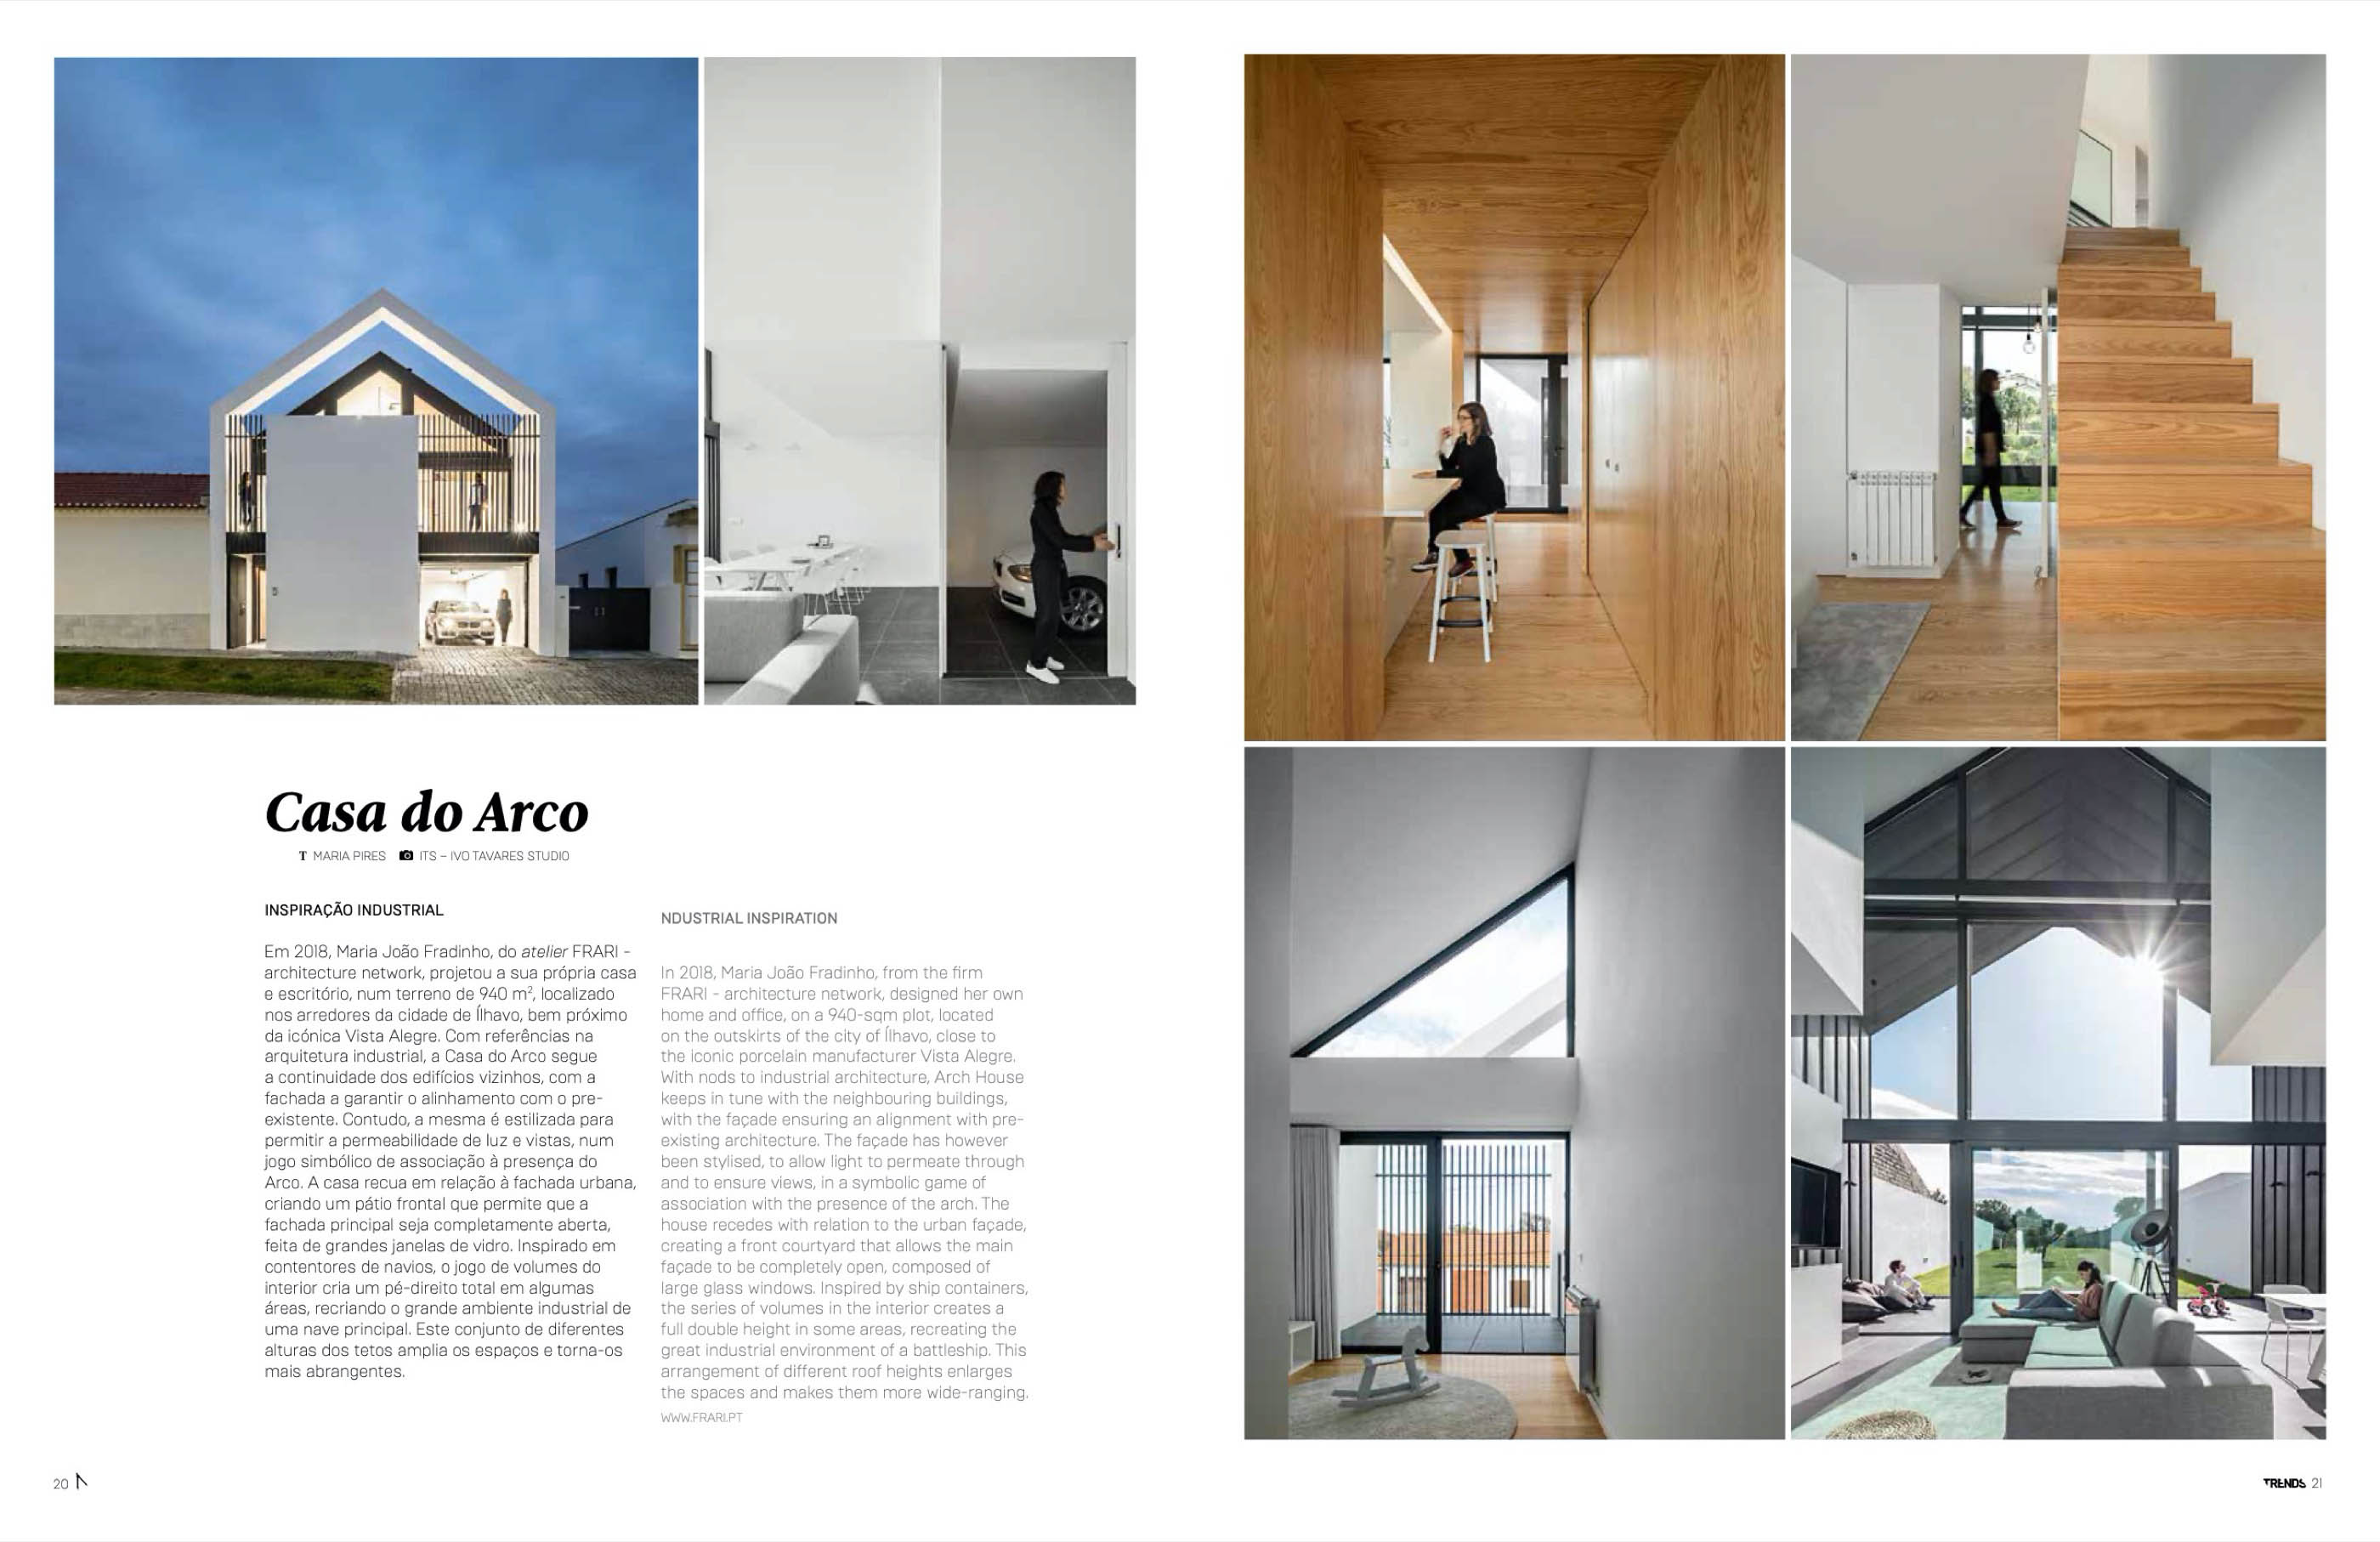 Atelier De Arquitectura , Frari , Hinterland E Ren Ito Publicad do fotografo Ivo Tavares Studio